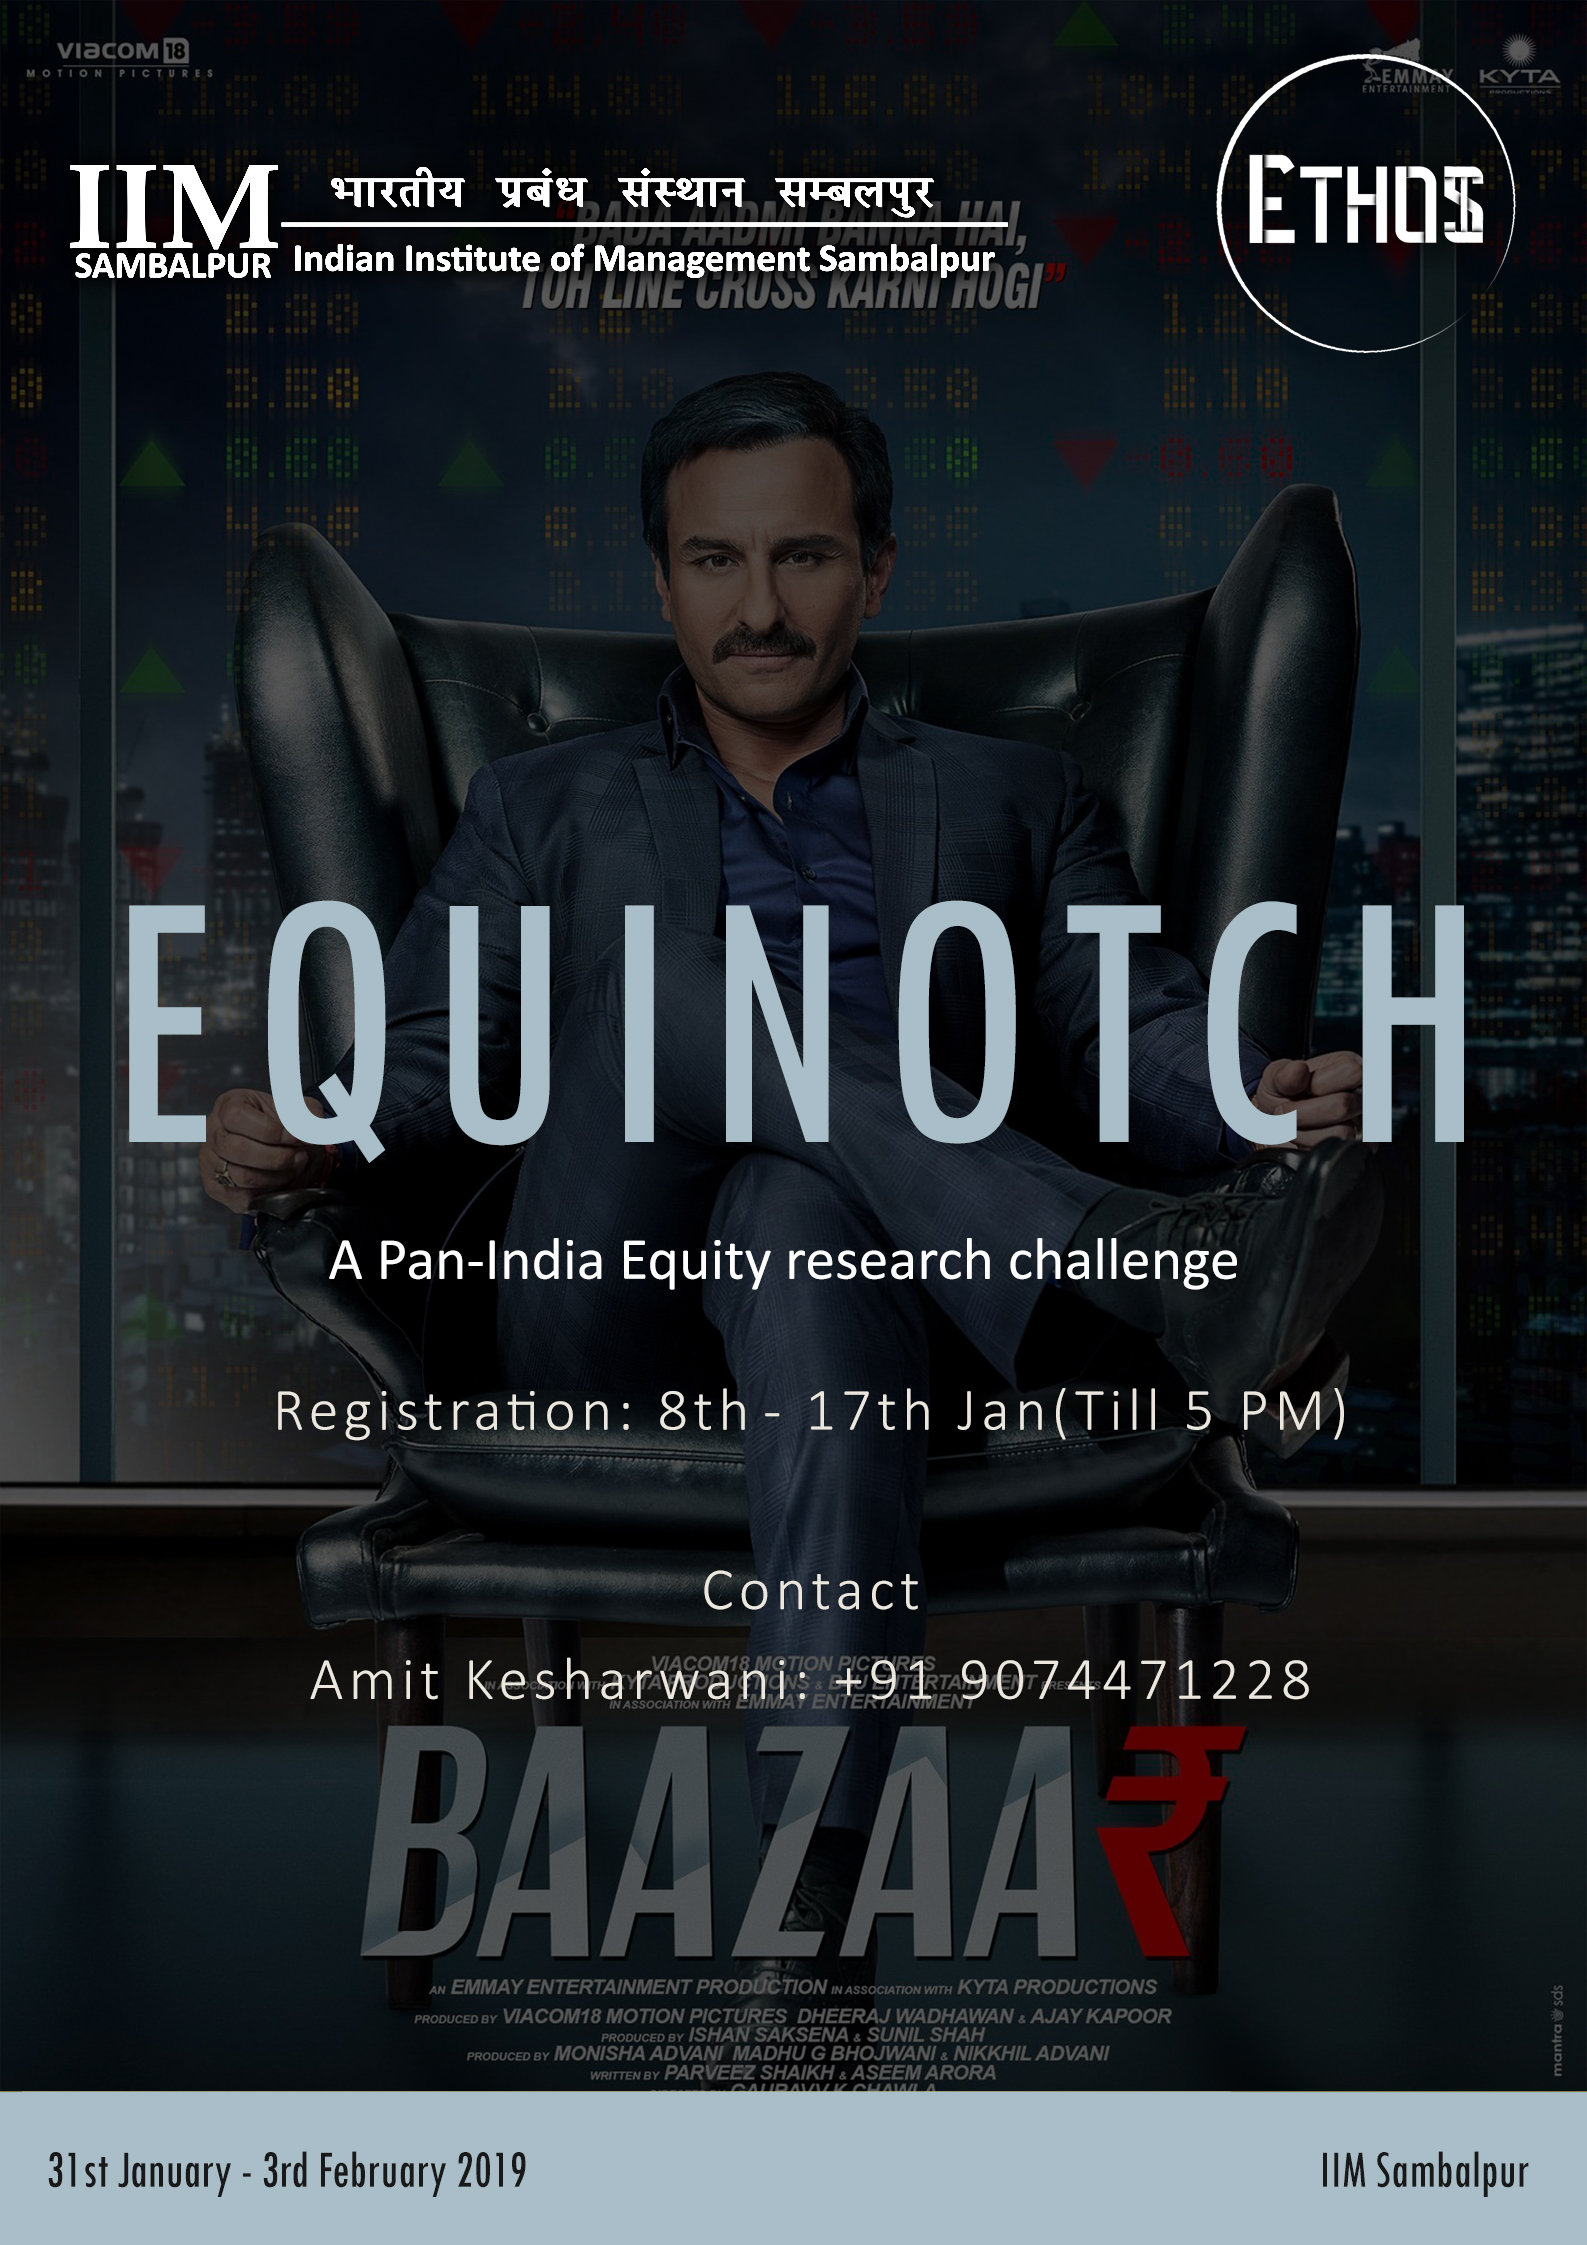 Equinotch-Equinotch_Updated.jpg